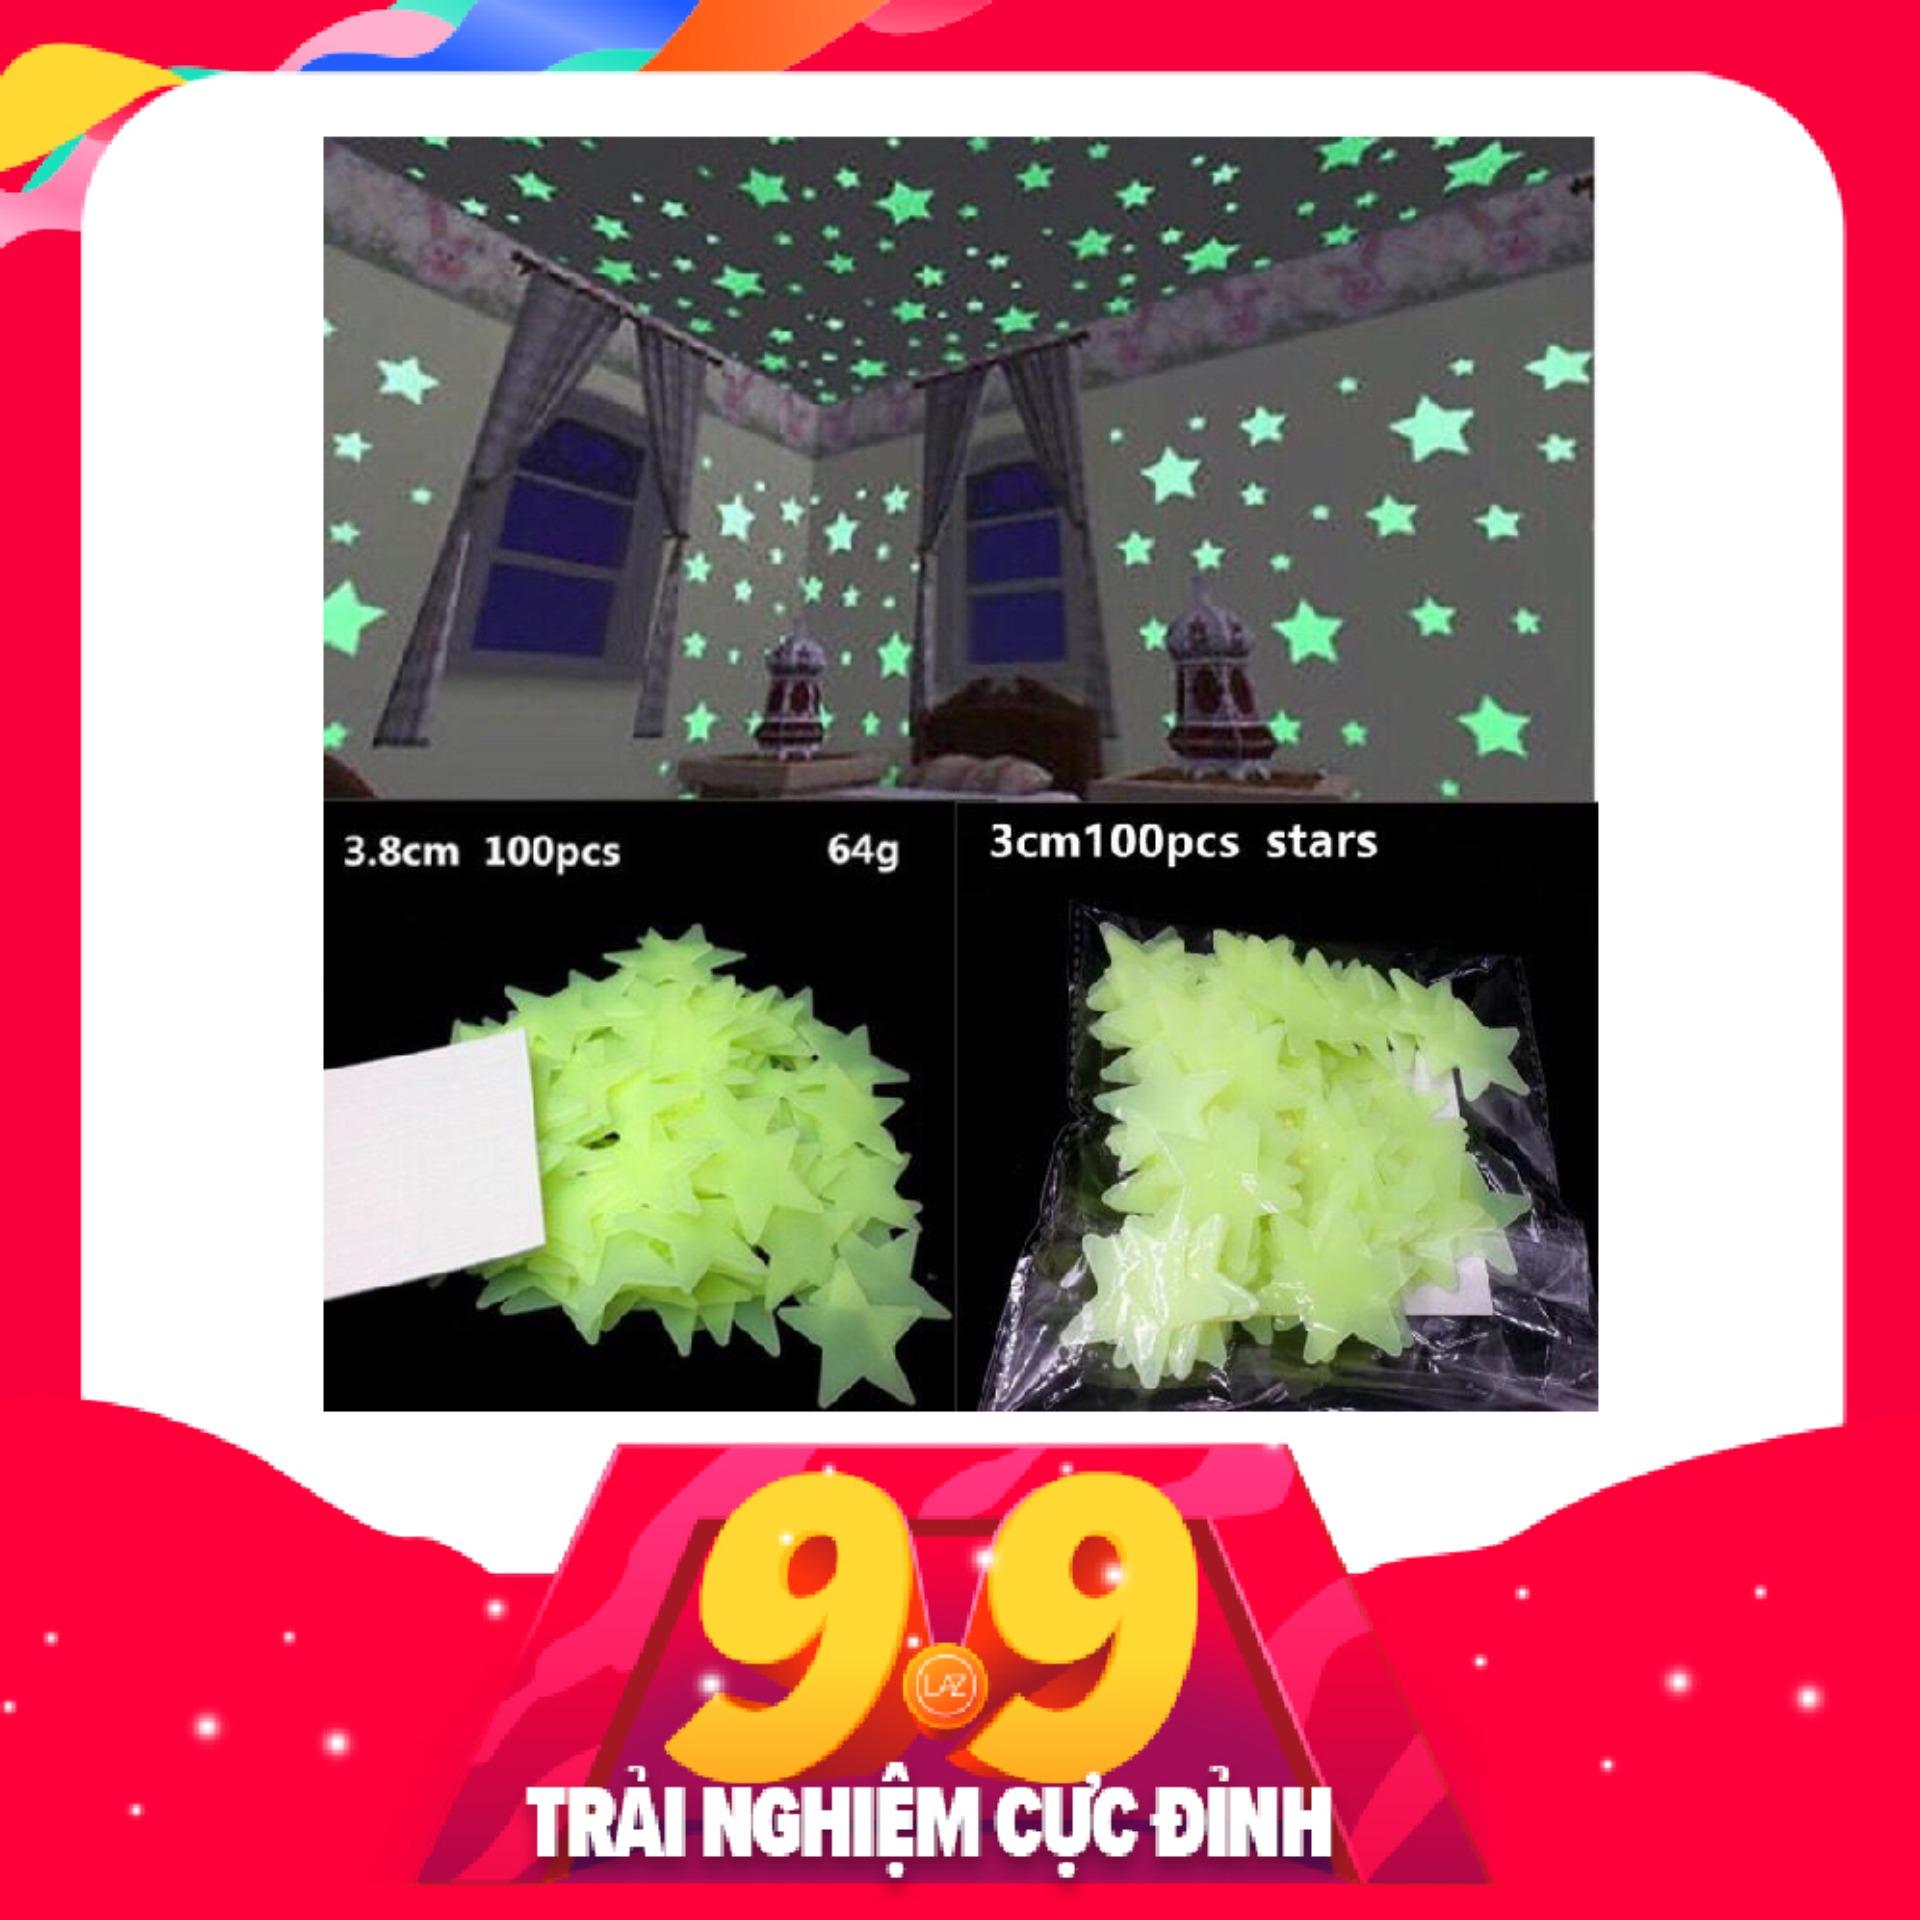 100 Ngôi Sao Dán Tường Dạ Quang 3cm phát sáng trong đêm- MÀU Xanh lá cây